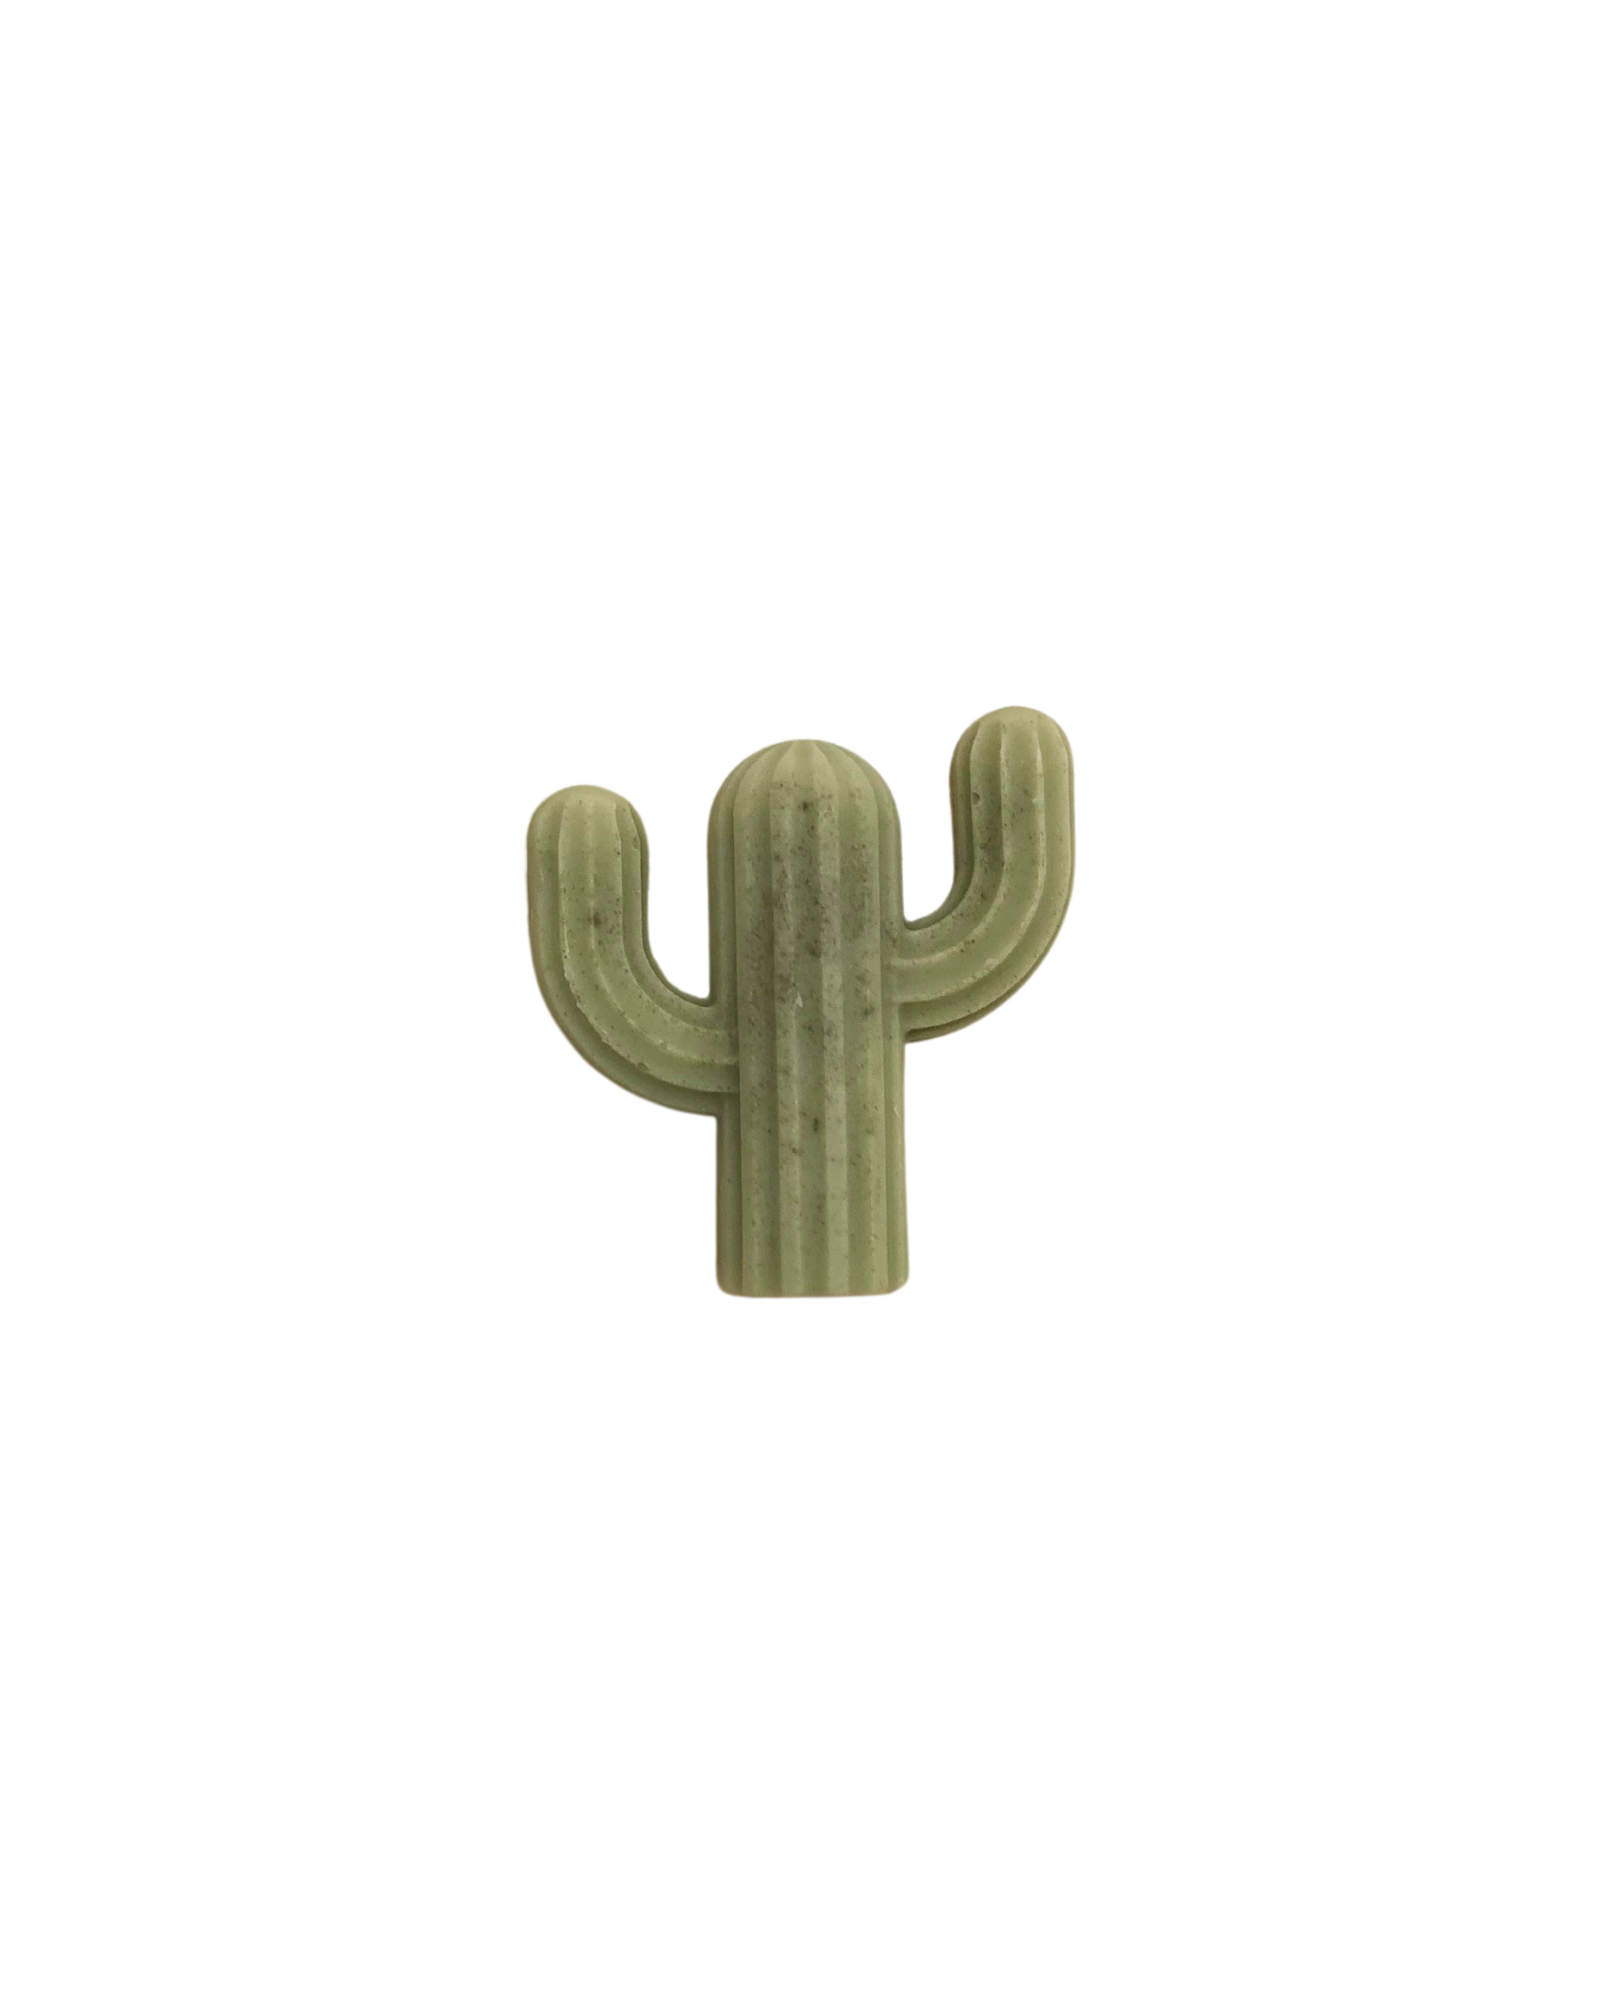 Mini Cactus Soap | Individual